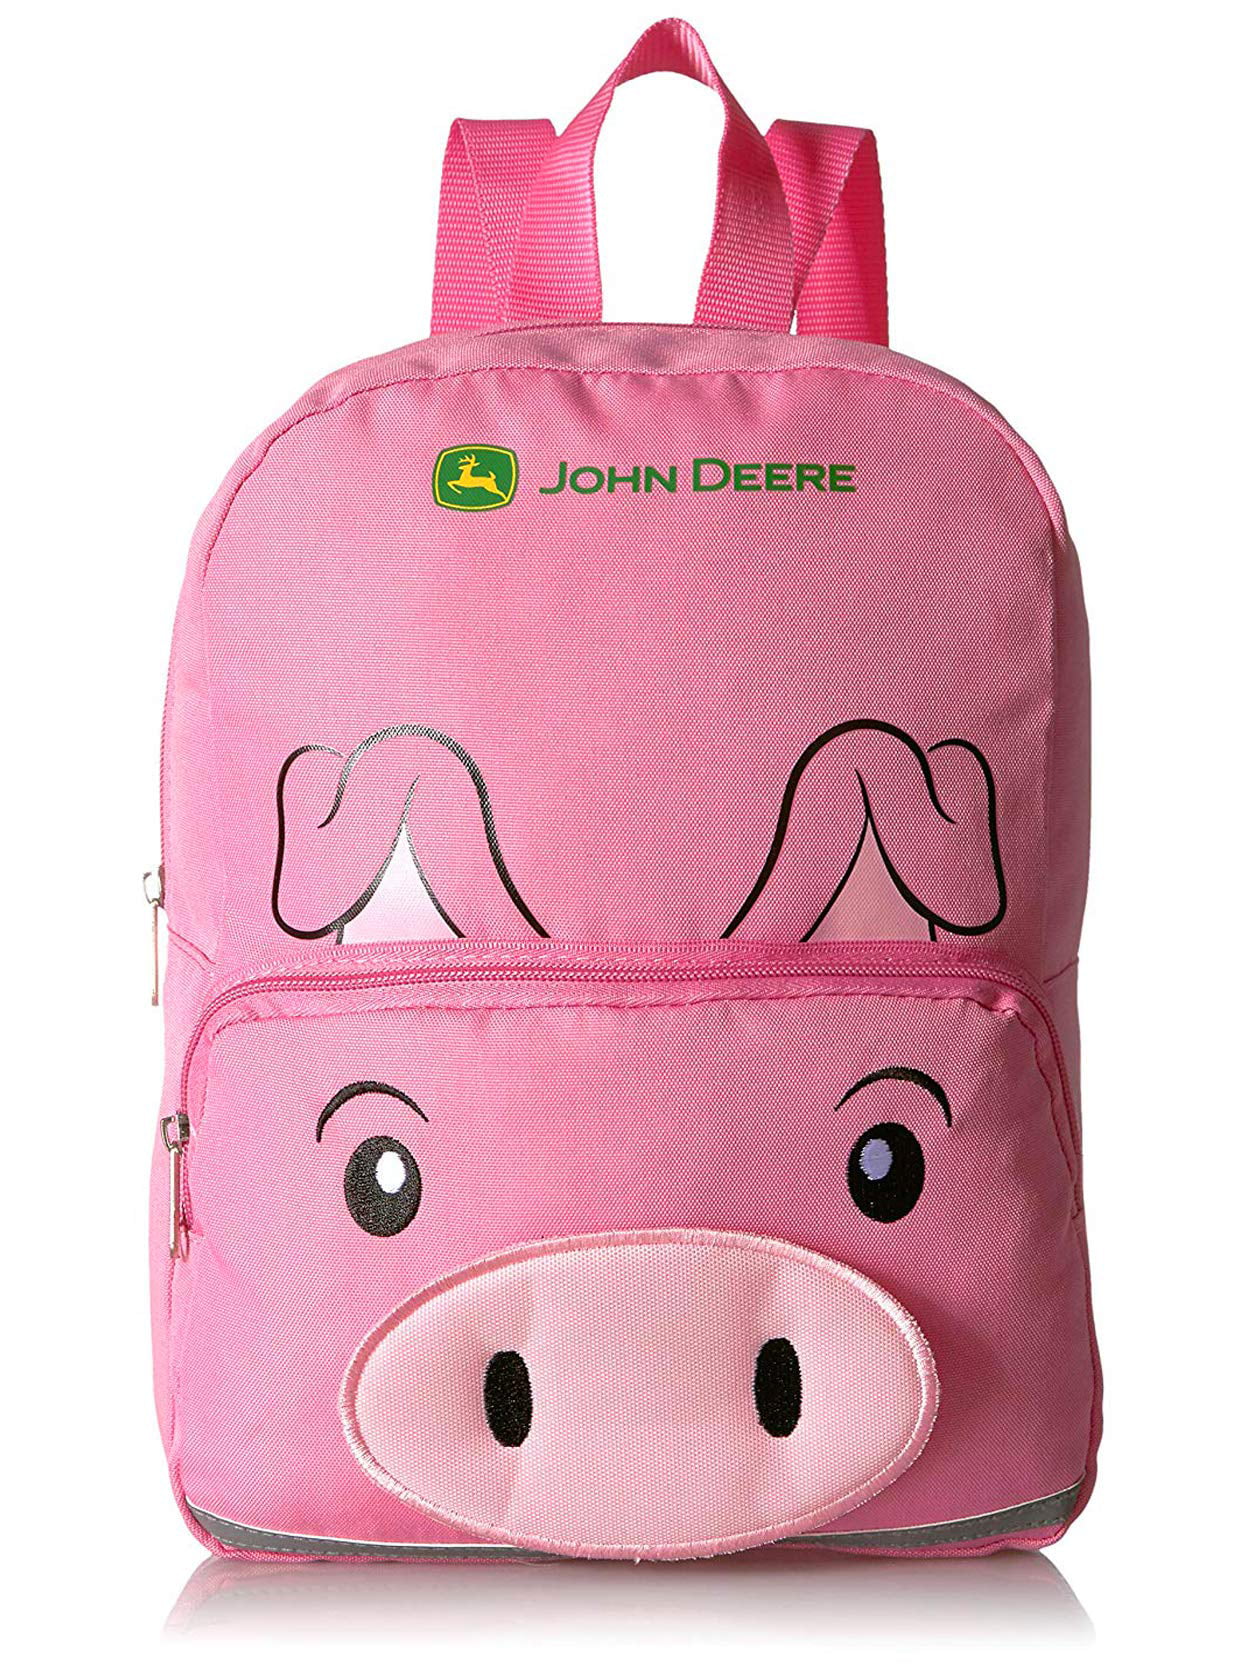 John Deere Boys Toddler Backpack 